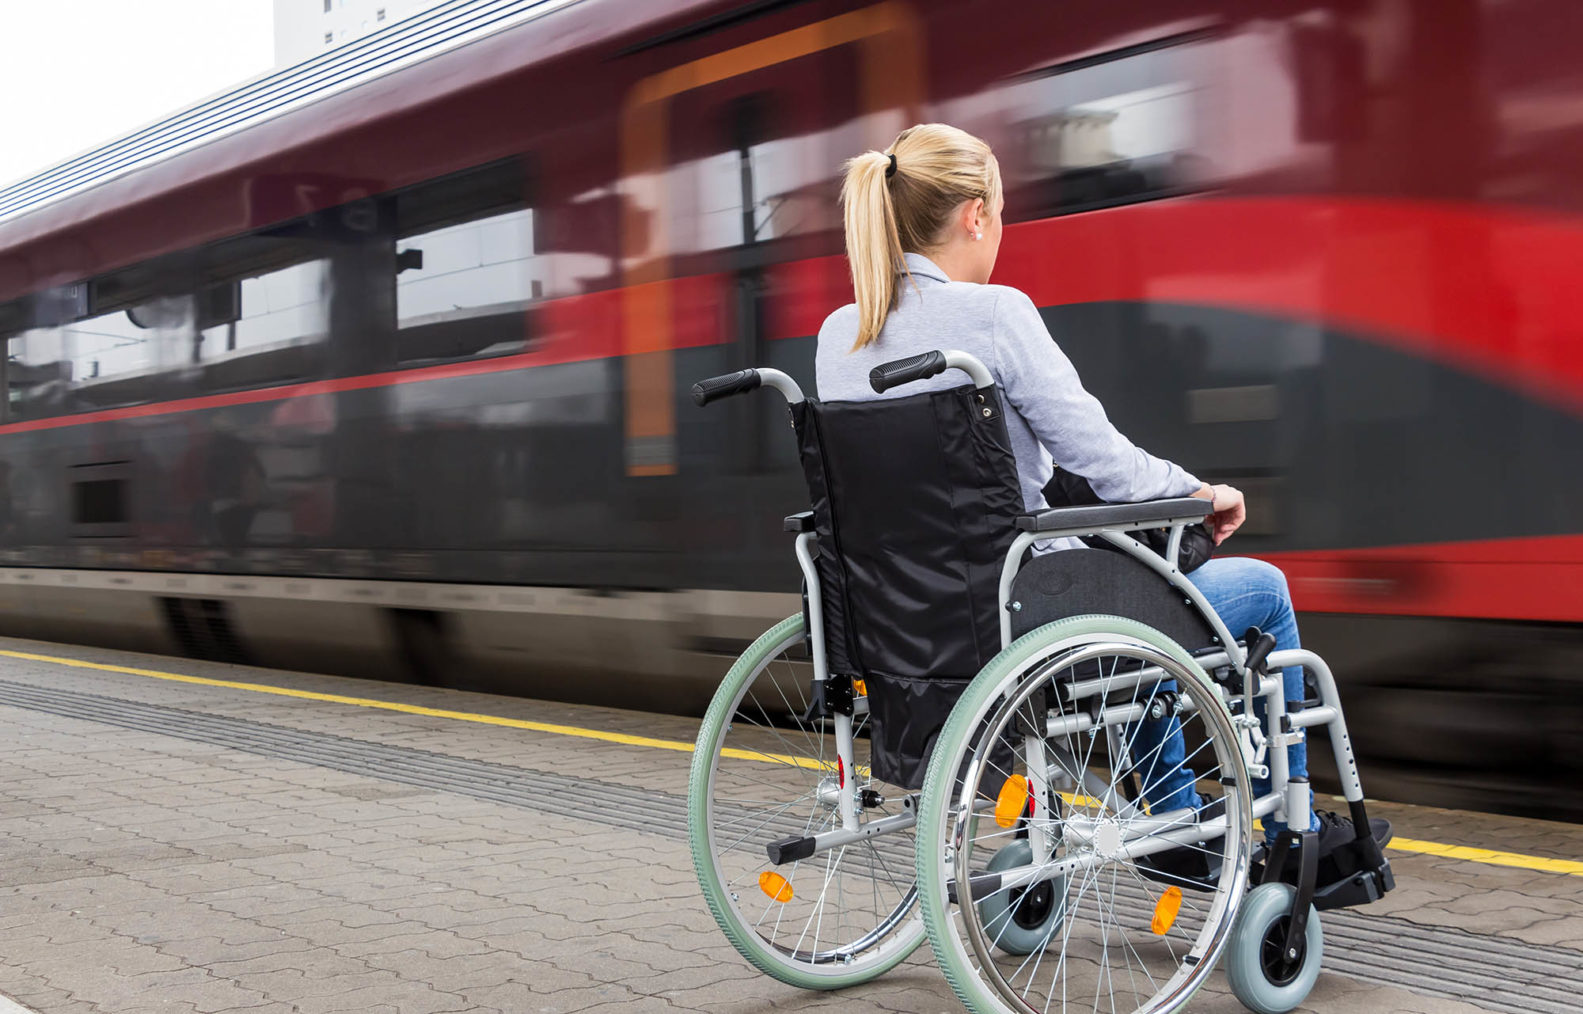 Ung kvinne i rullestol på perrong mens tog passerer forbi.